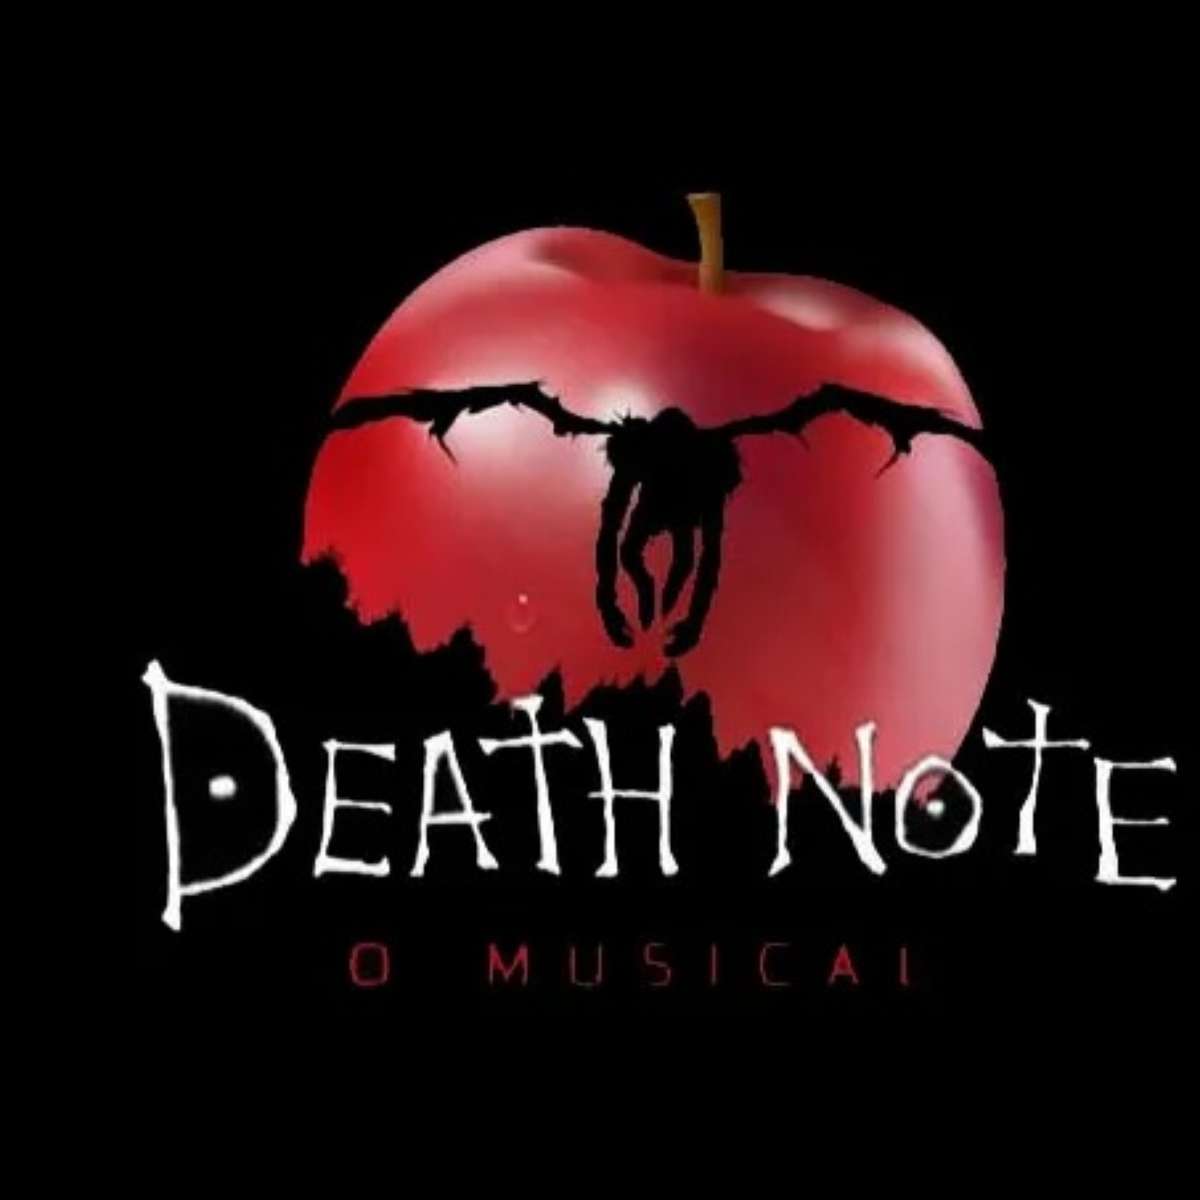 Death Note: revelado visual de Misa na série de TV